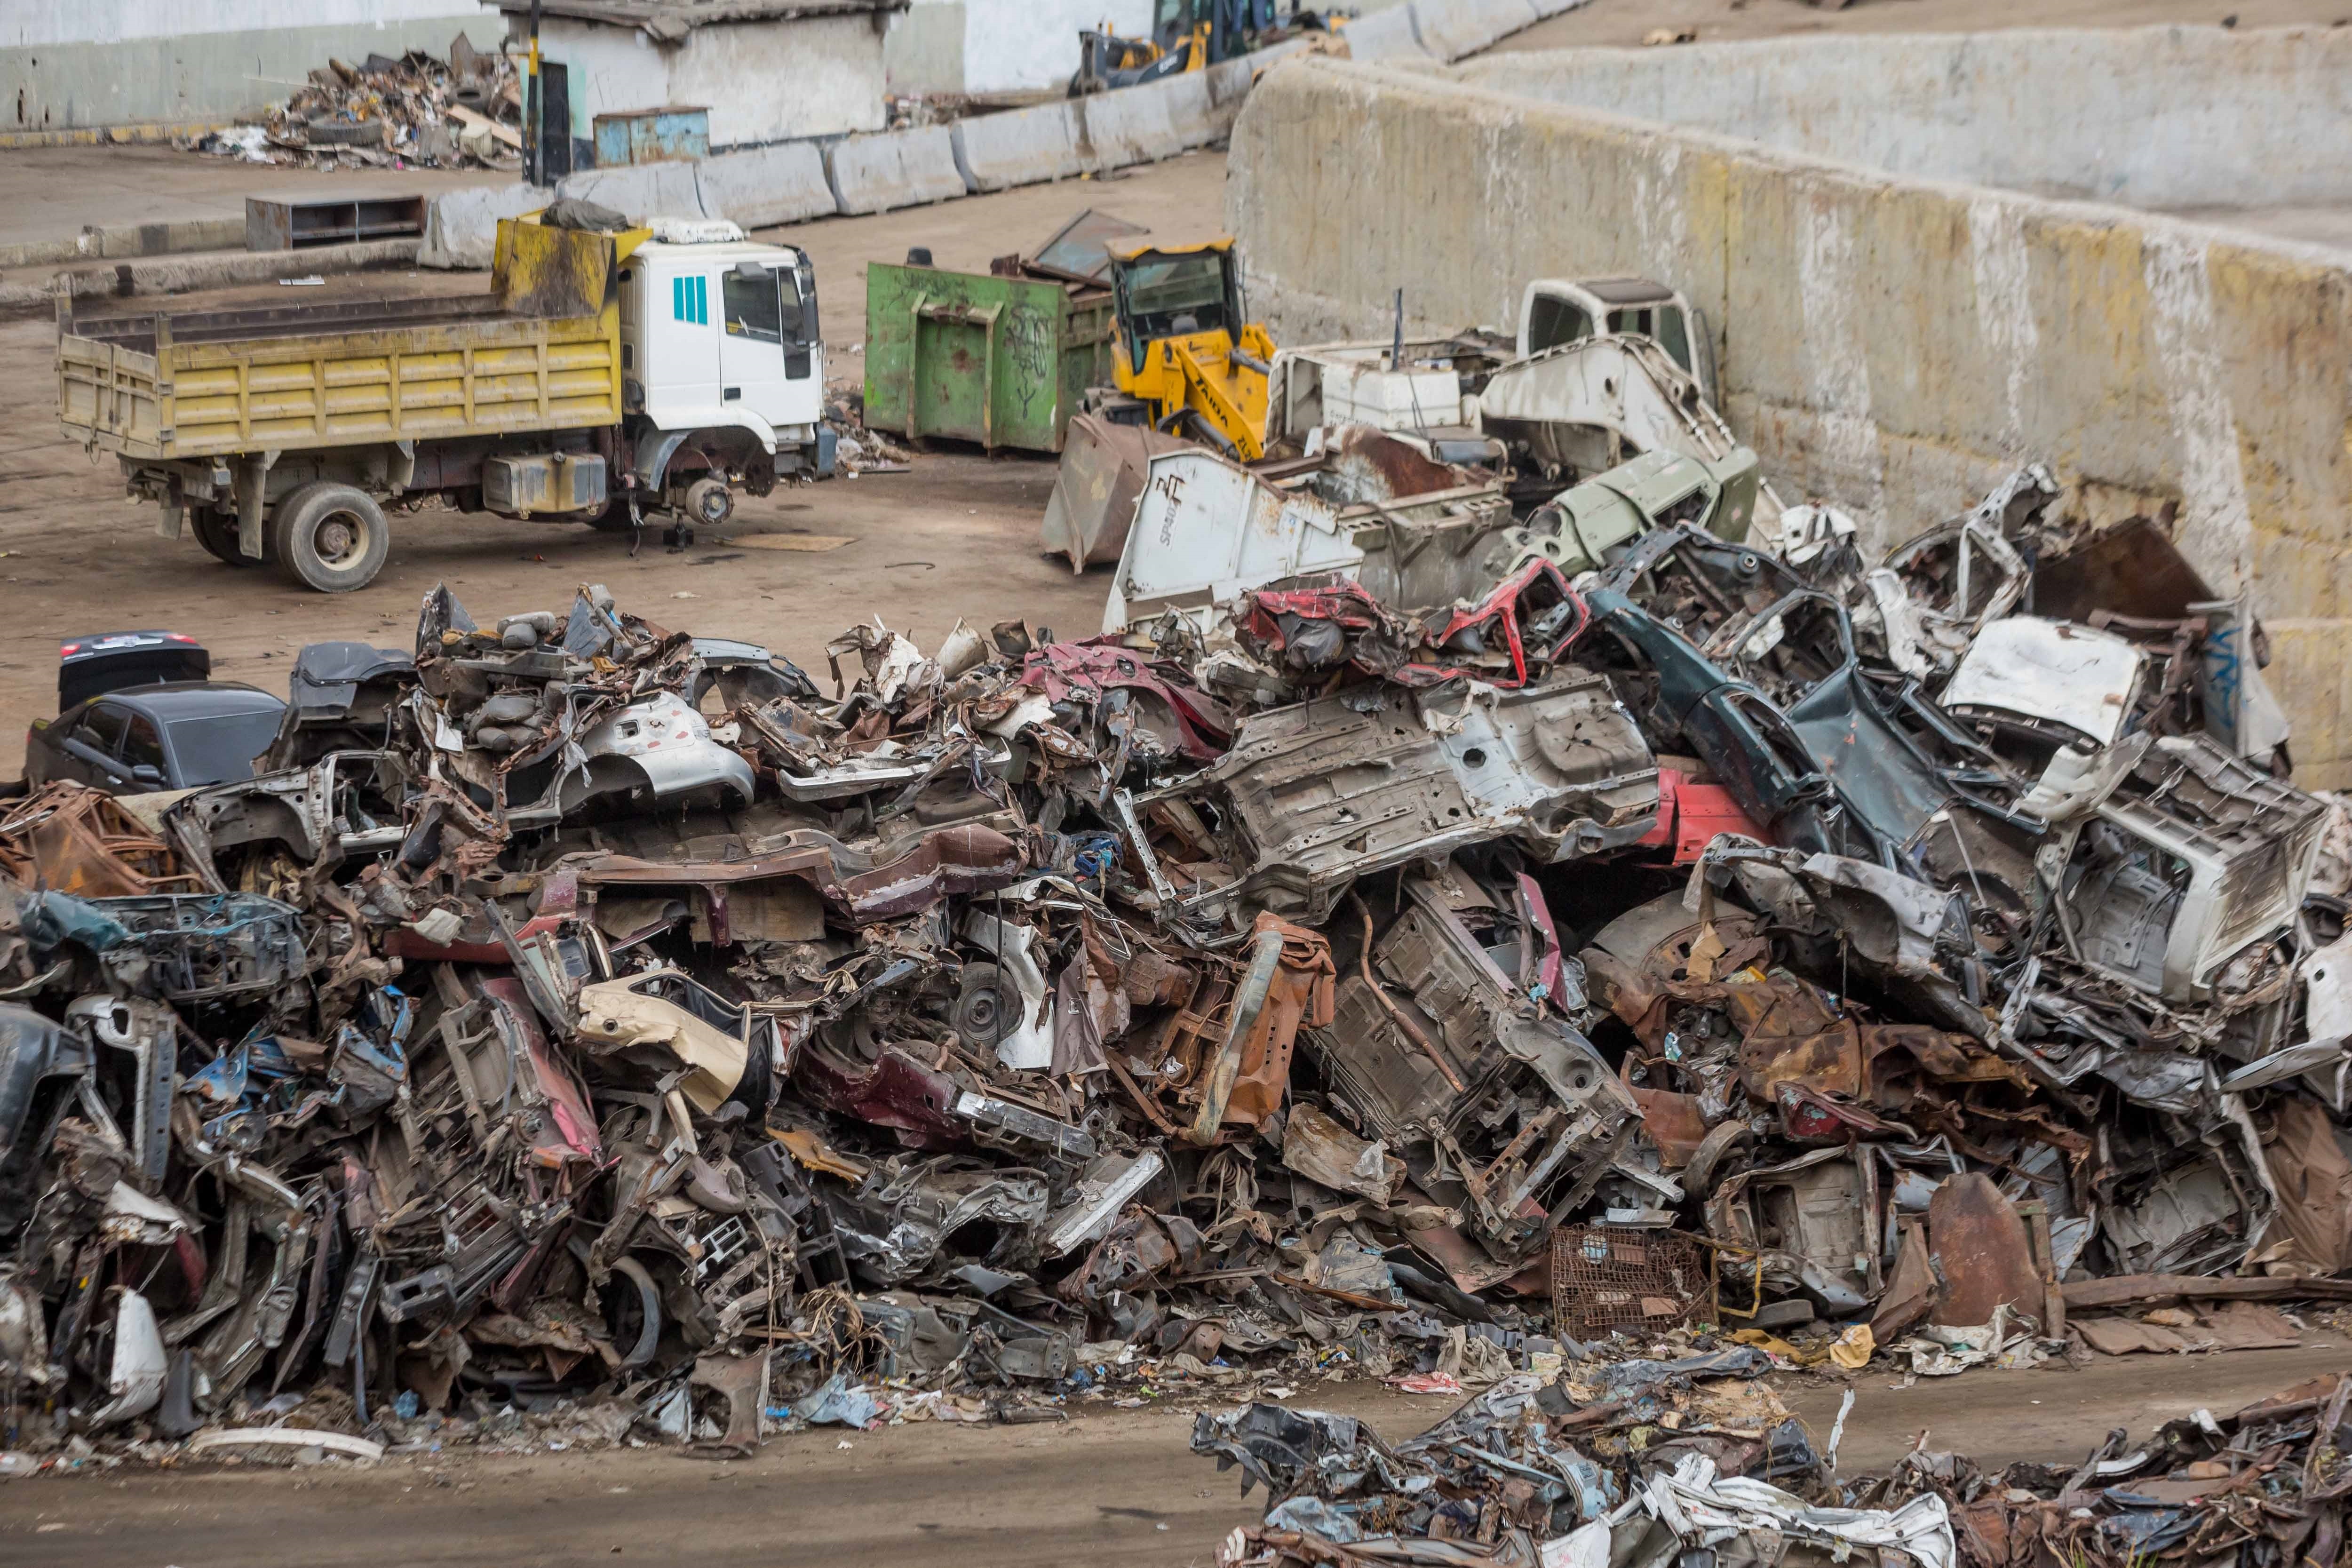 El reciclaje por decreto, Maduro busca convertir “la chatarra en divisas” (Fotos)